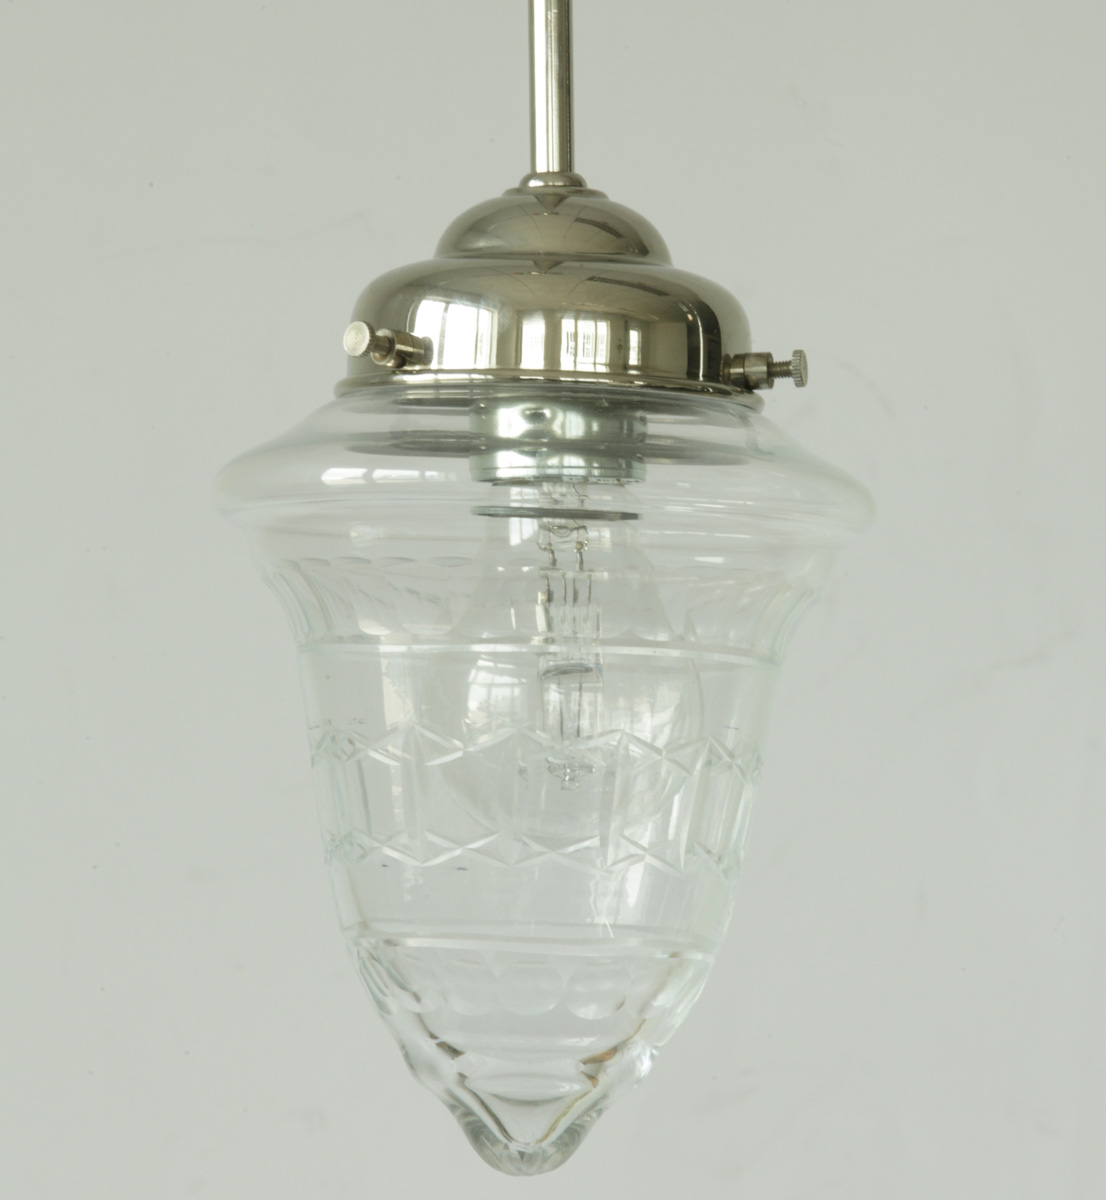 Rohr-Pendelleuchte mit geschliffenem Kristallglas: Abgebildet mit glanzvernickeltem Pendel-Rohr